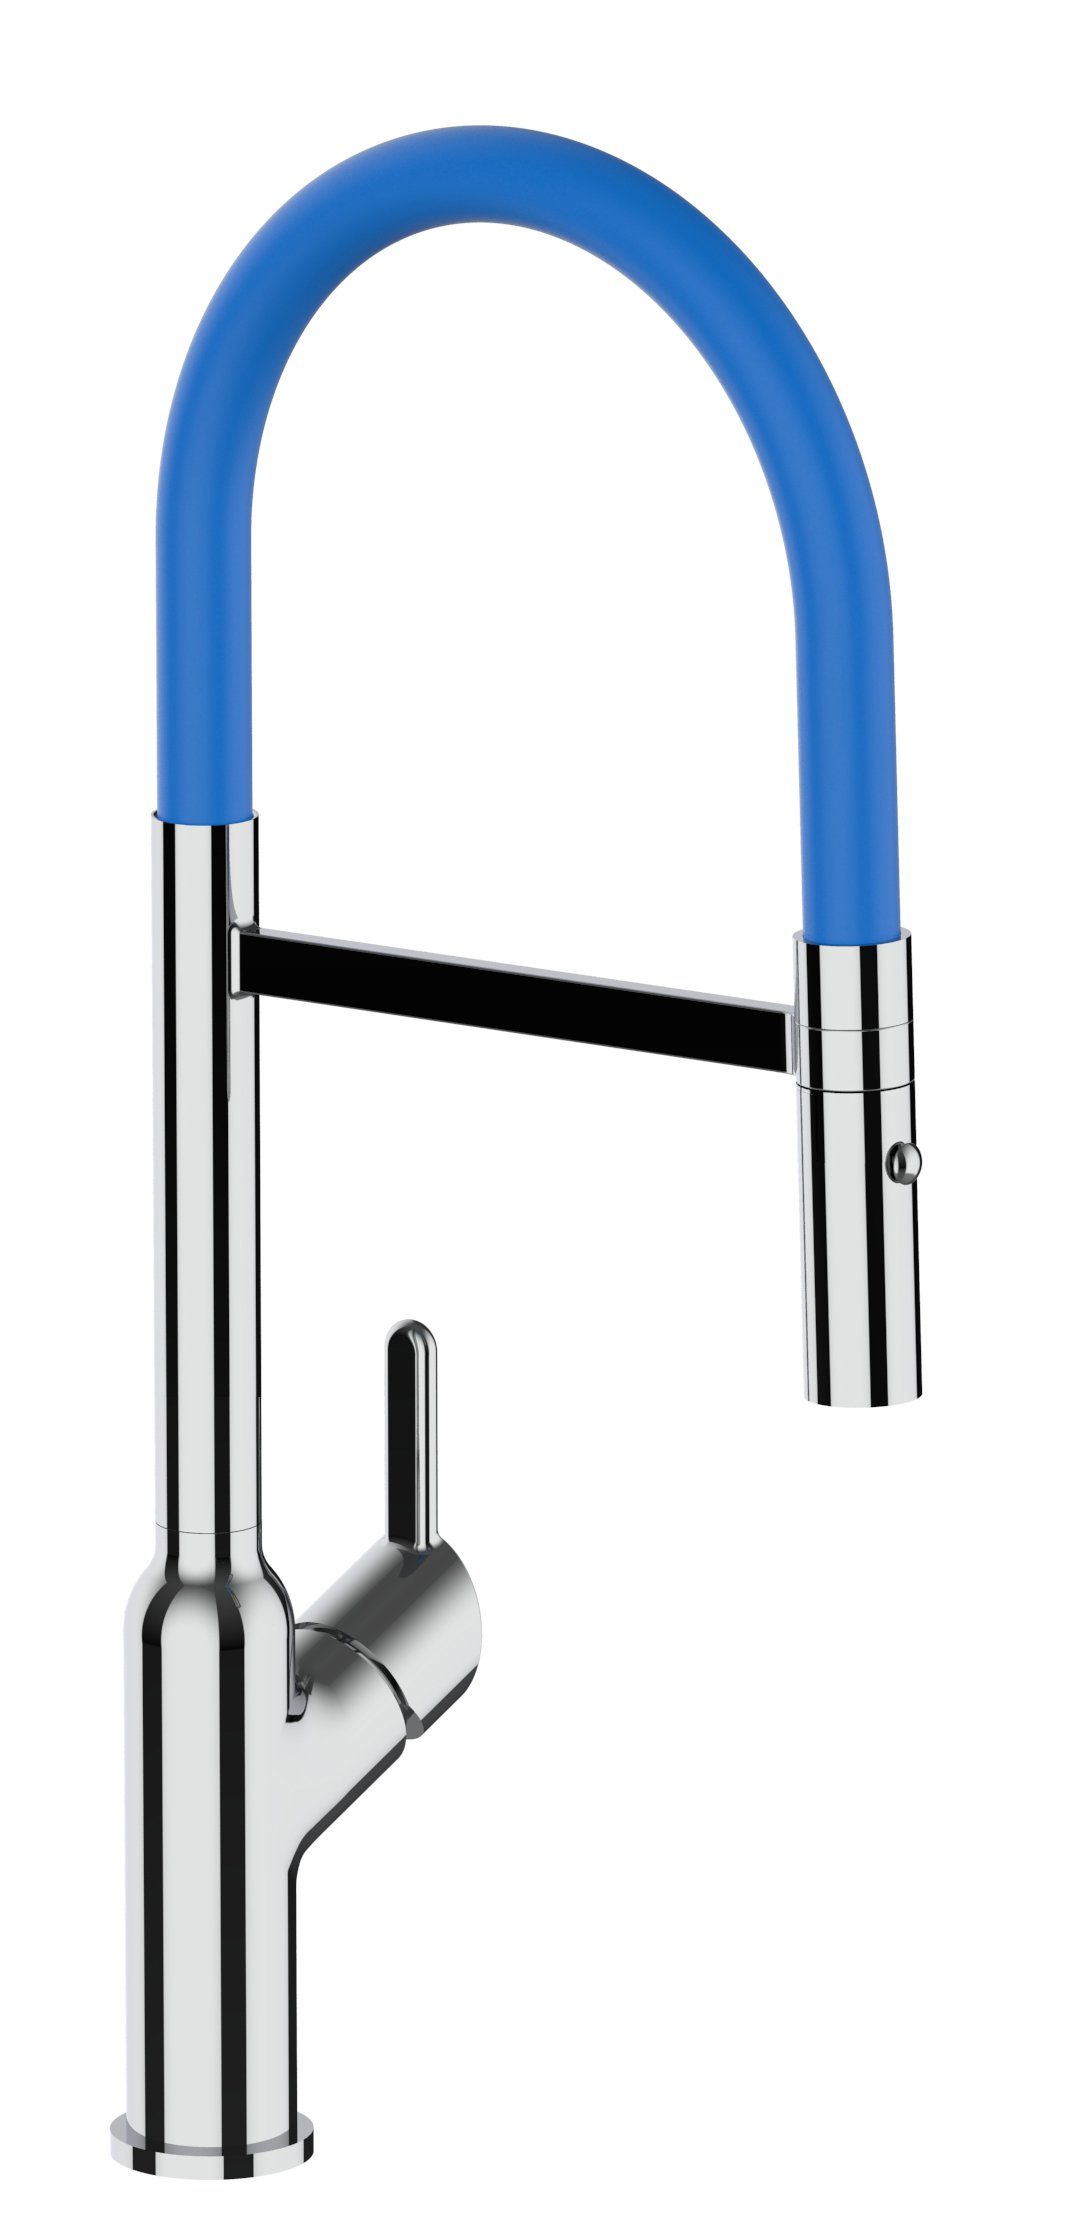 VIZIO Küchenarmatur Design / Hochwertige Hochdruck, abnehmbarer Brause mit Küchenarmatur 2 Brause chrom mit Wasserhahn strahl 360° Blau Verchromung, Auslauf schwenkbarem 2Strahl und Chrom